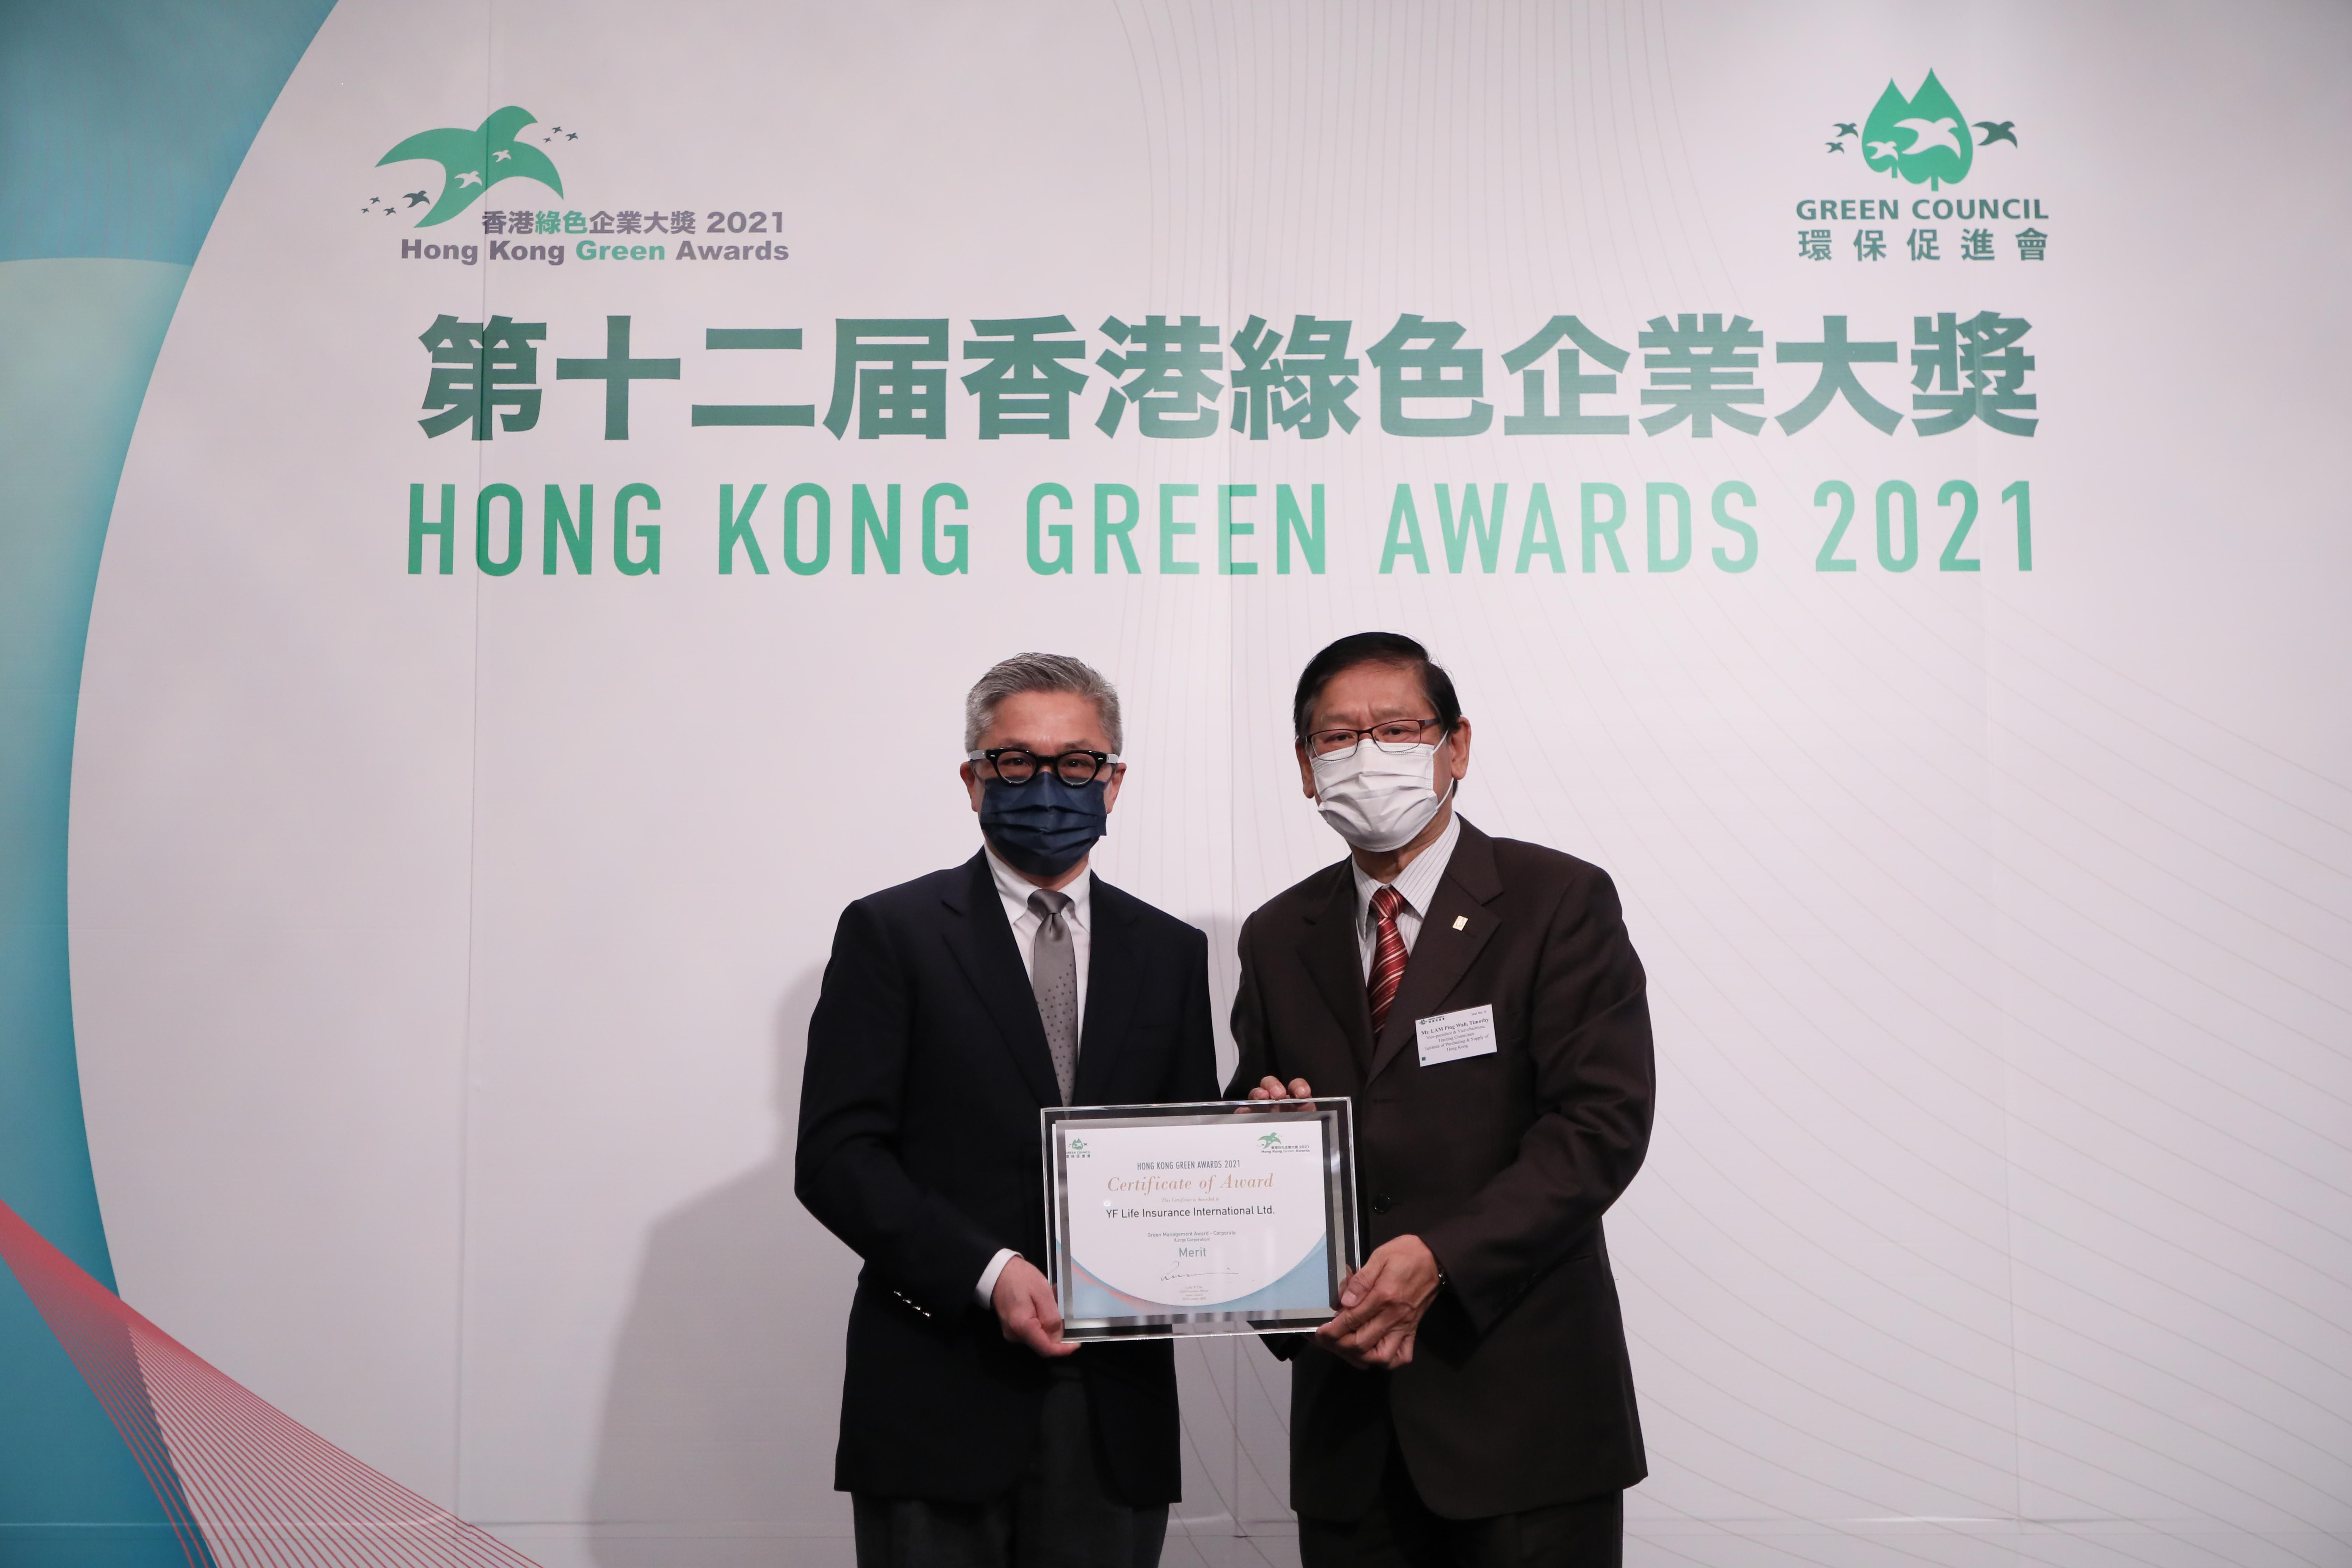 万通保险创新营销品牌部部门副主管叶伟杰先生（图左）出席《环保促进会》"第十二届香港绿色企业大奖"颁奖典礼，接受"优越环保管理奖"（企业）的优异奖。